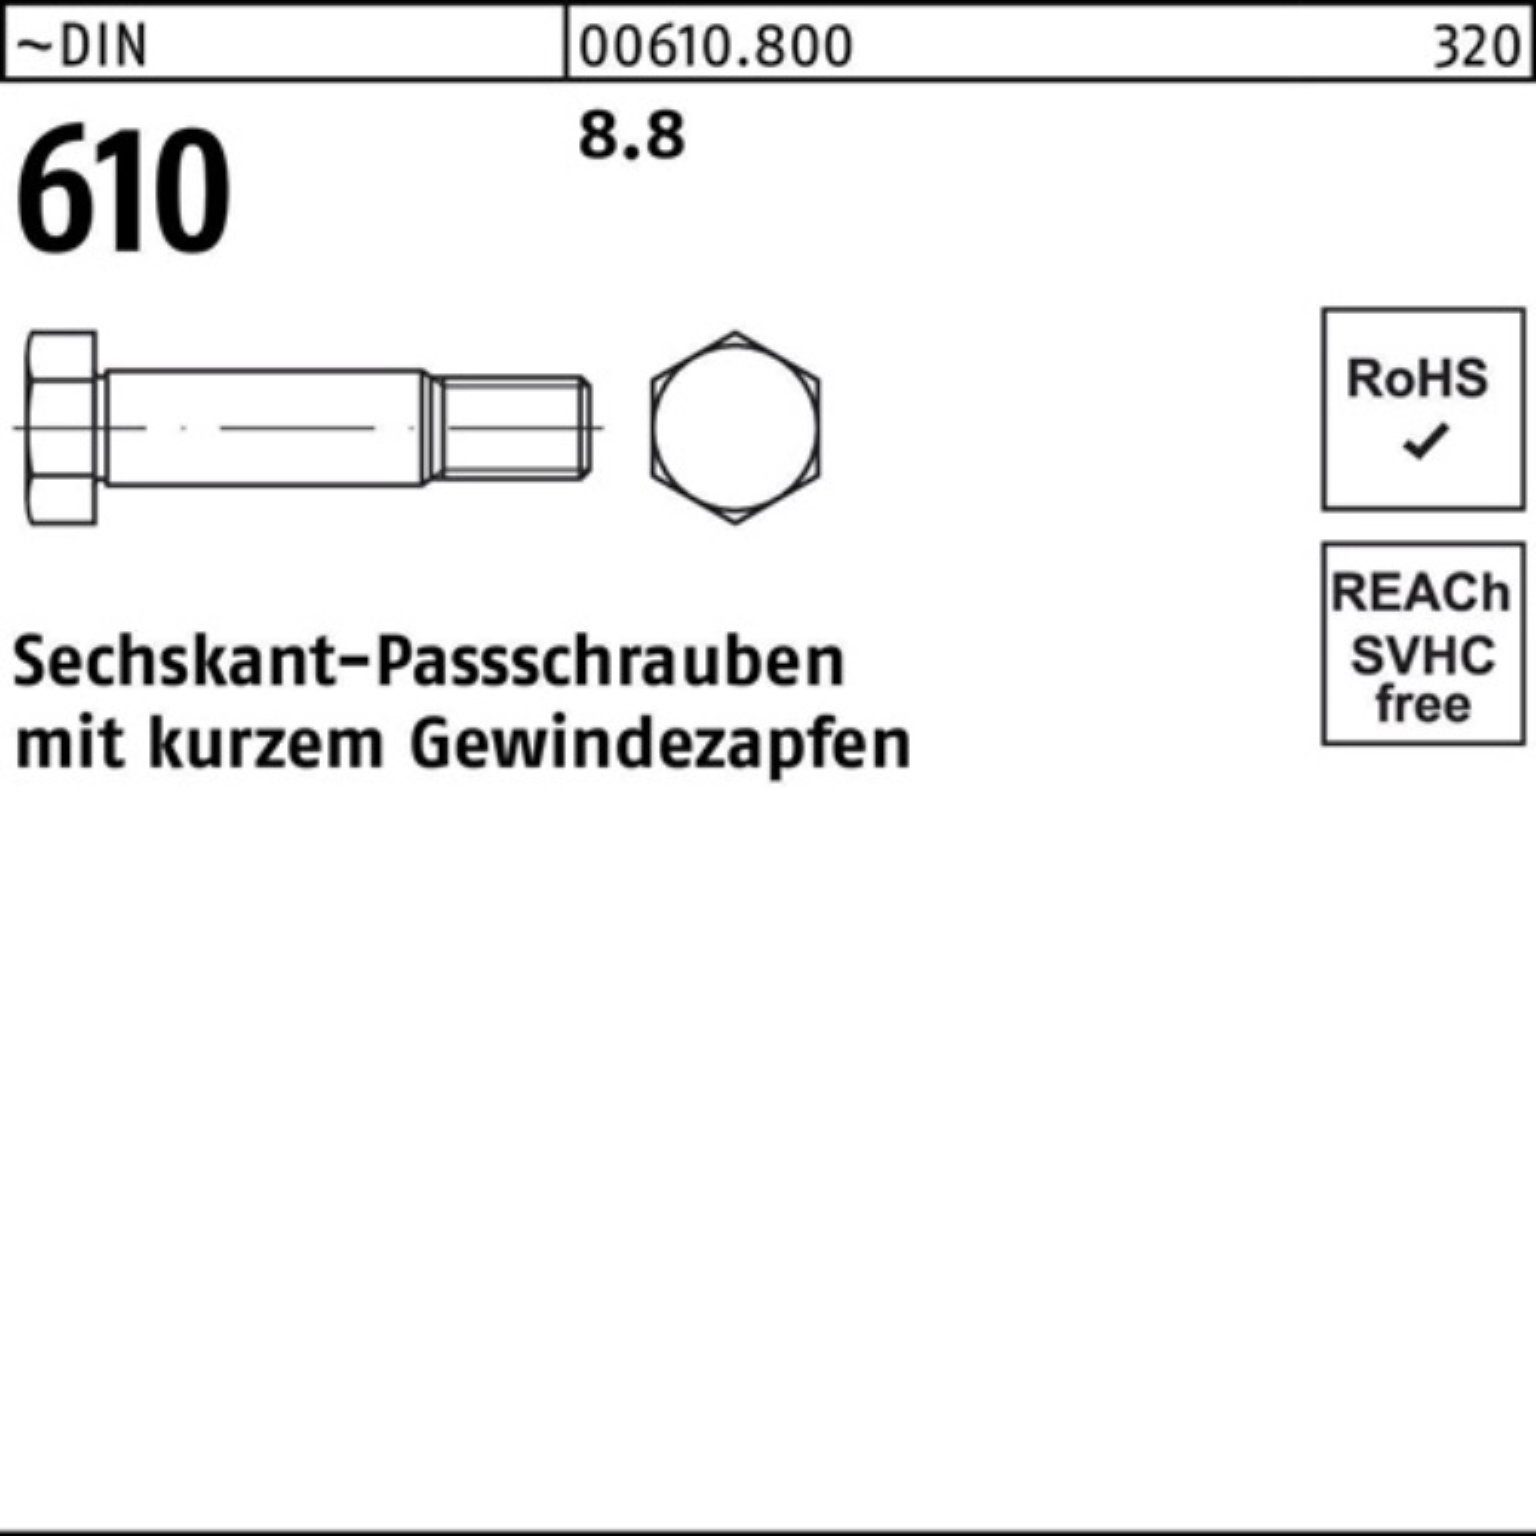 kurzem 610 DIN Pack Sechskantpassschraube Reyher Schraube M12x Gewindezapfen 55 100er